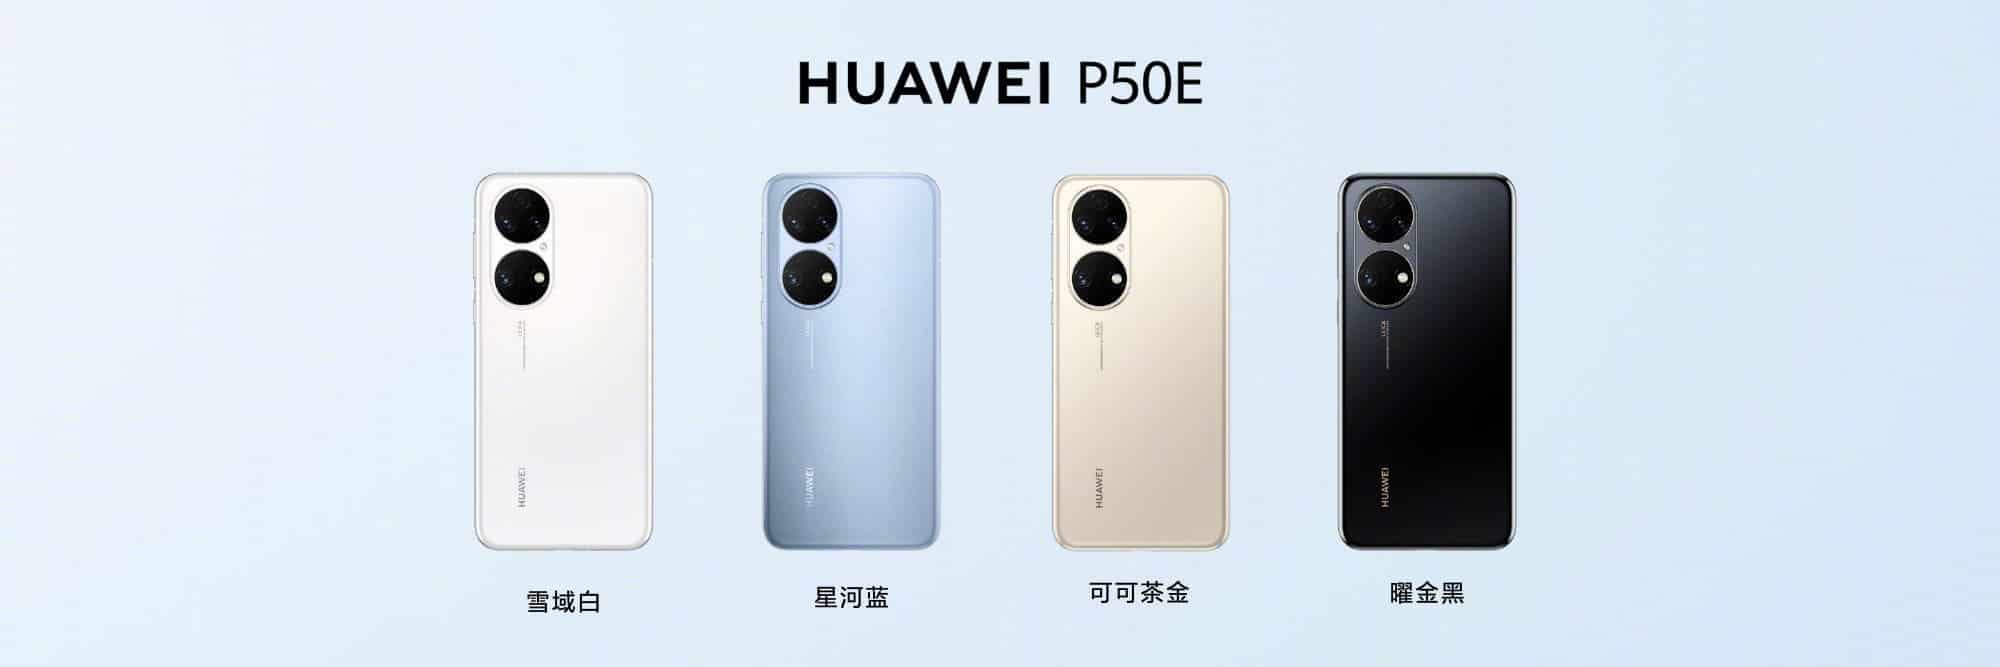 Huawei P50E colors